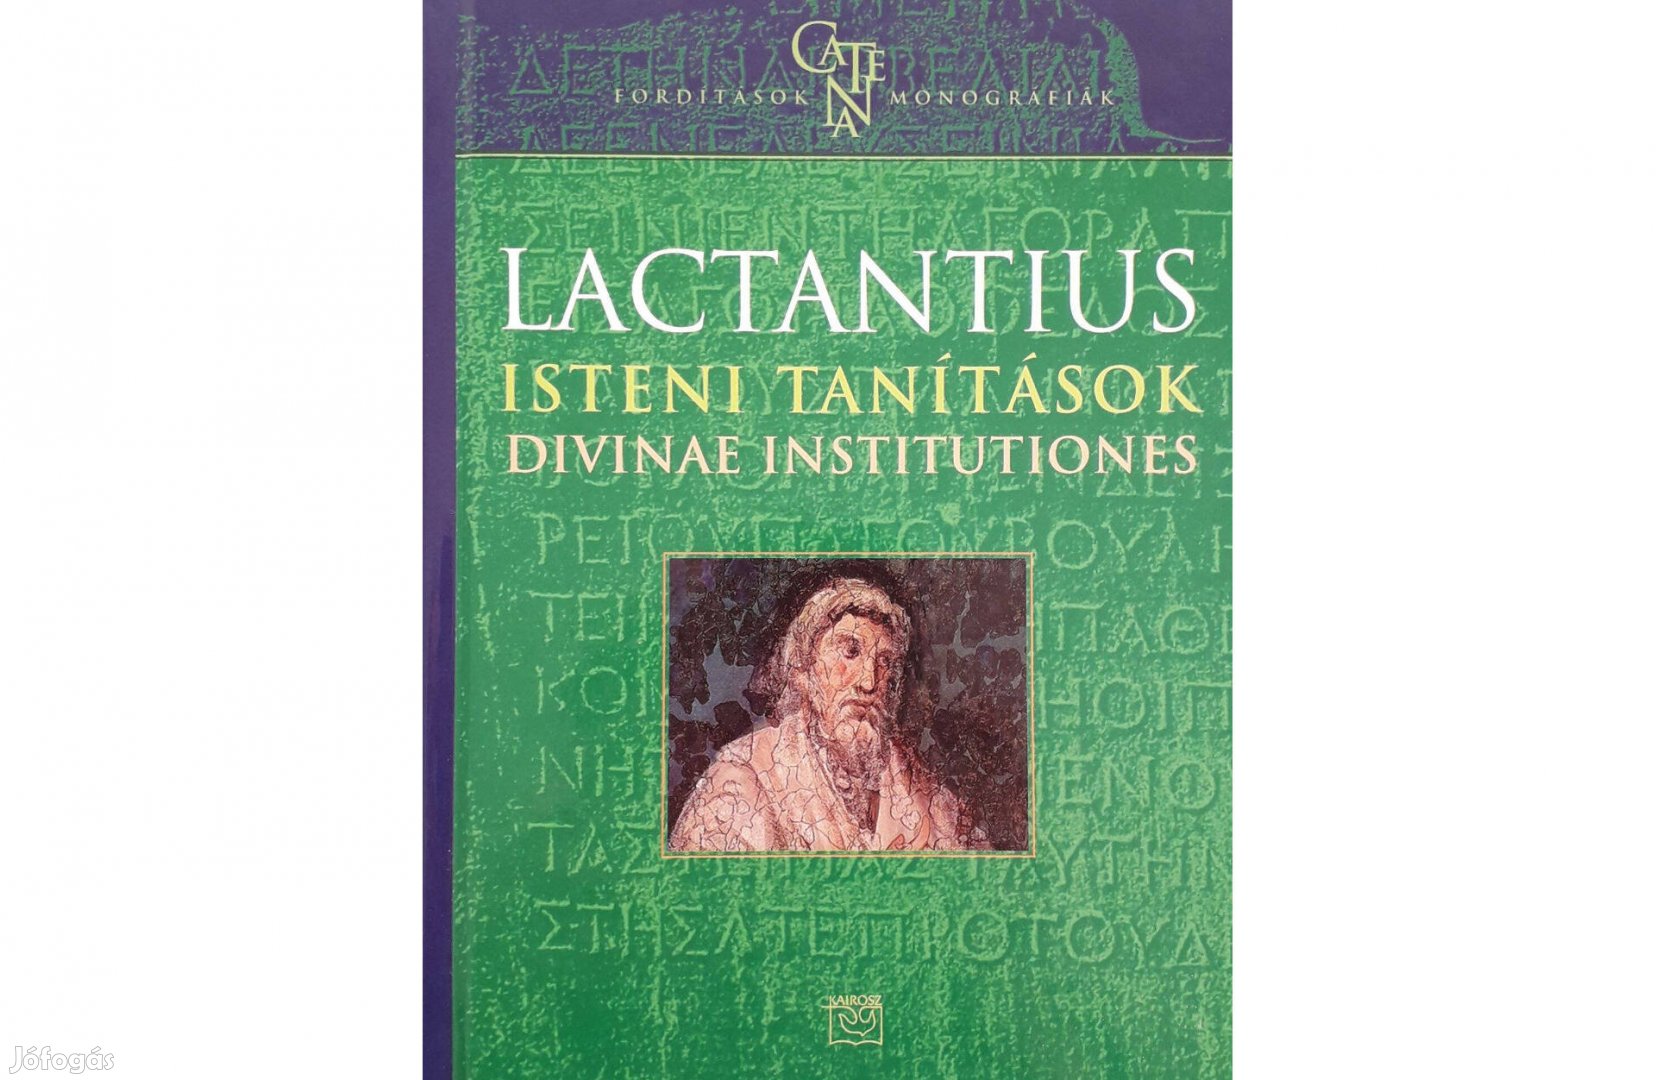 Lactantius Isteni tanítások Divinae Institutiones